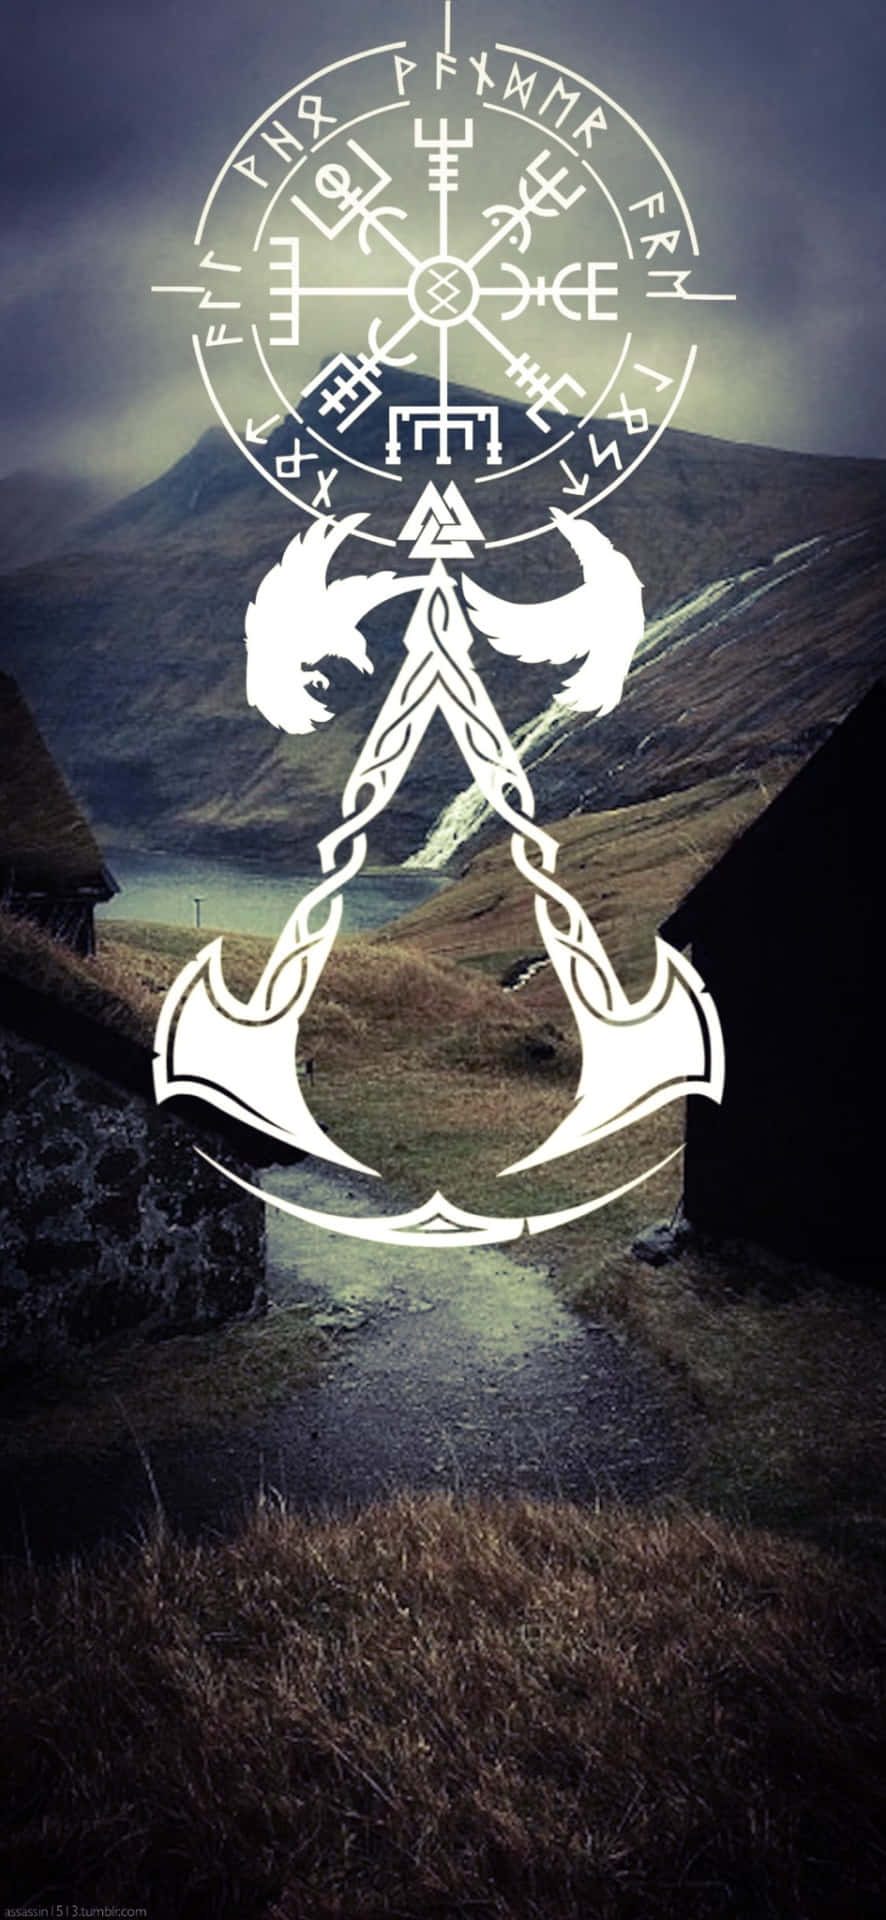 Iphonex-bakgrund Med Symbolen Från Assassin's Creed Valhalla.